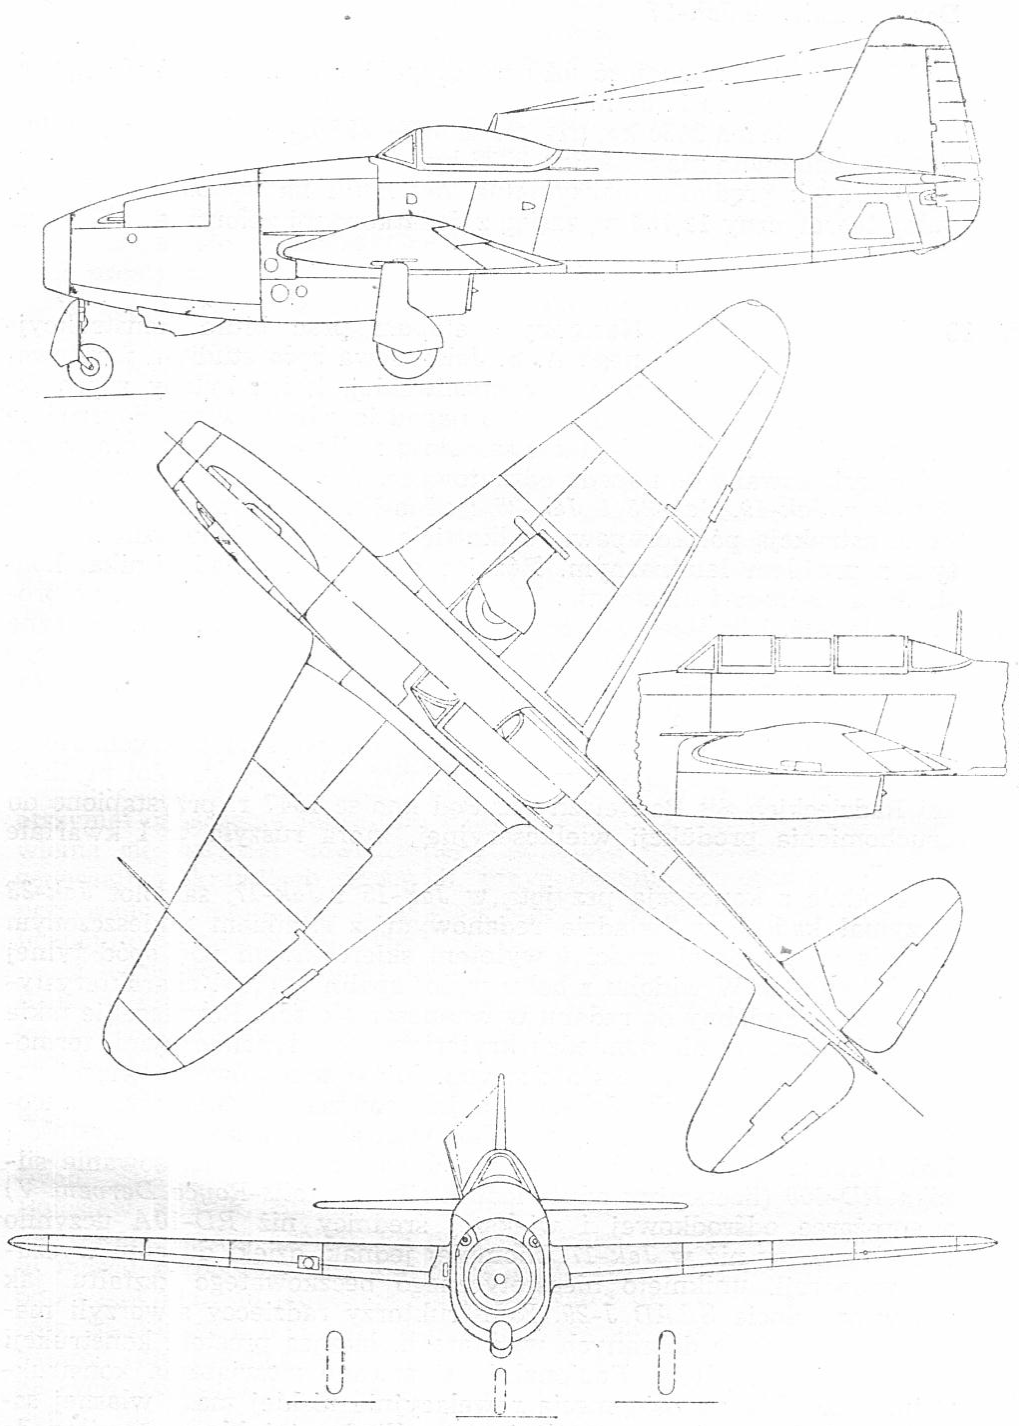 Rysunek Jak-17. 1980 rok. Zdjęcie LAC